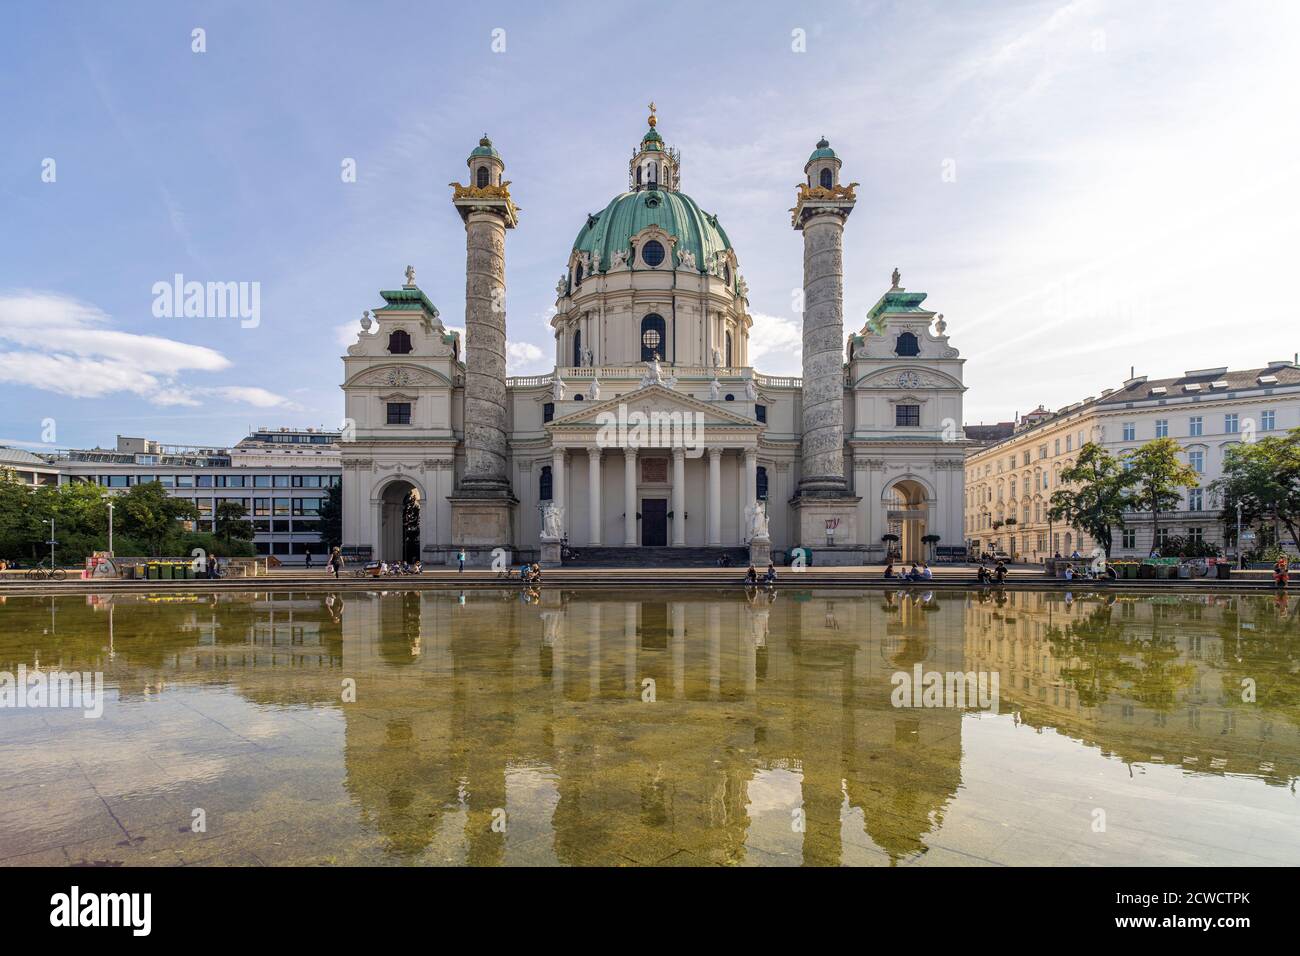 Die barocke Karlskirche à Wien, Österreich, Europa | église baroque Karlskirche à Vienne, Autriche, Europe Banque D'Images